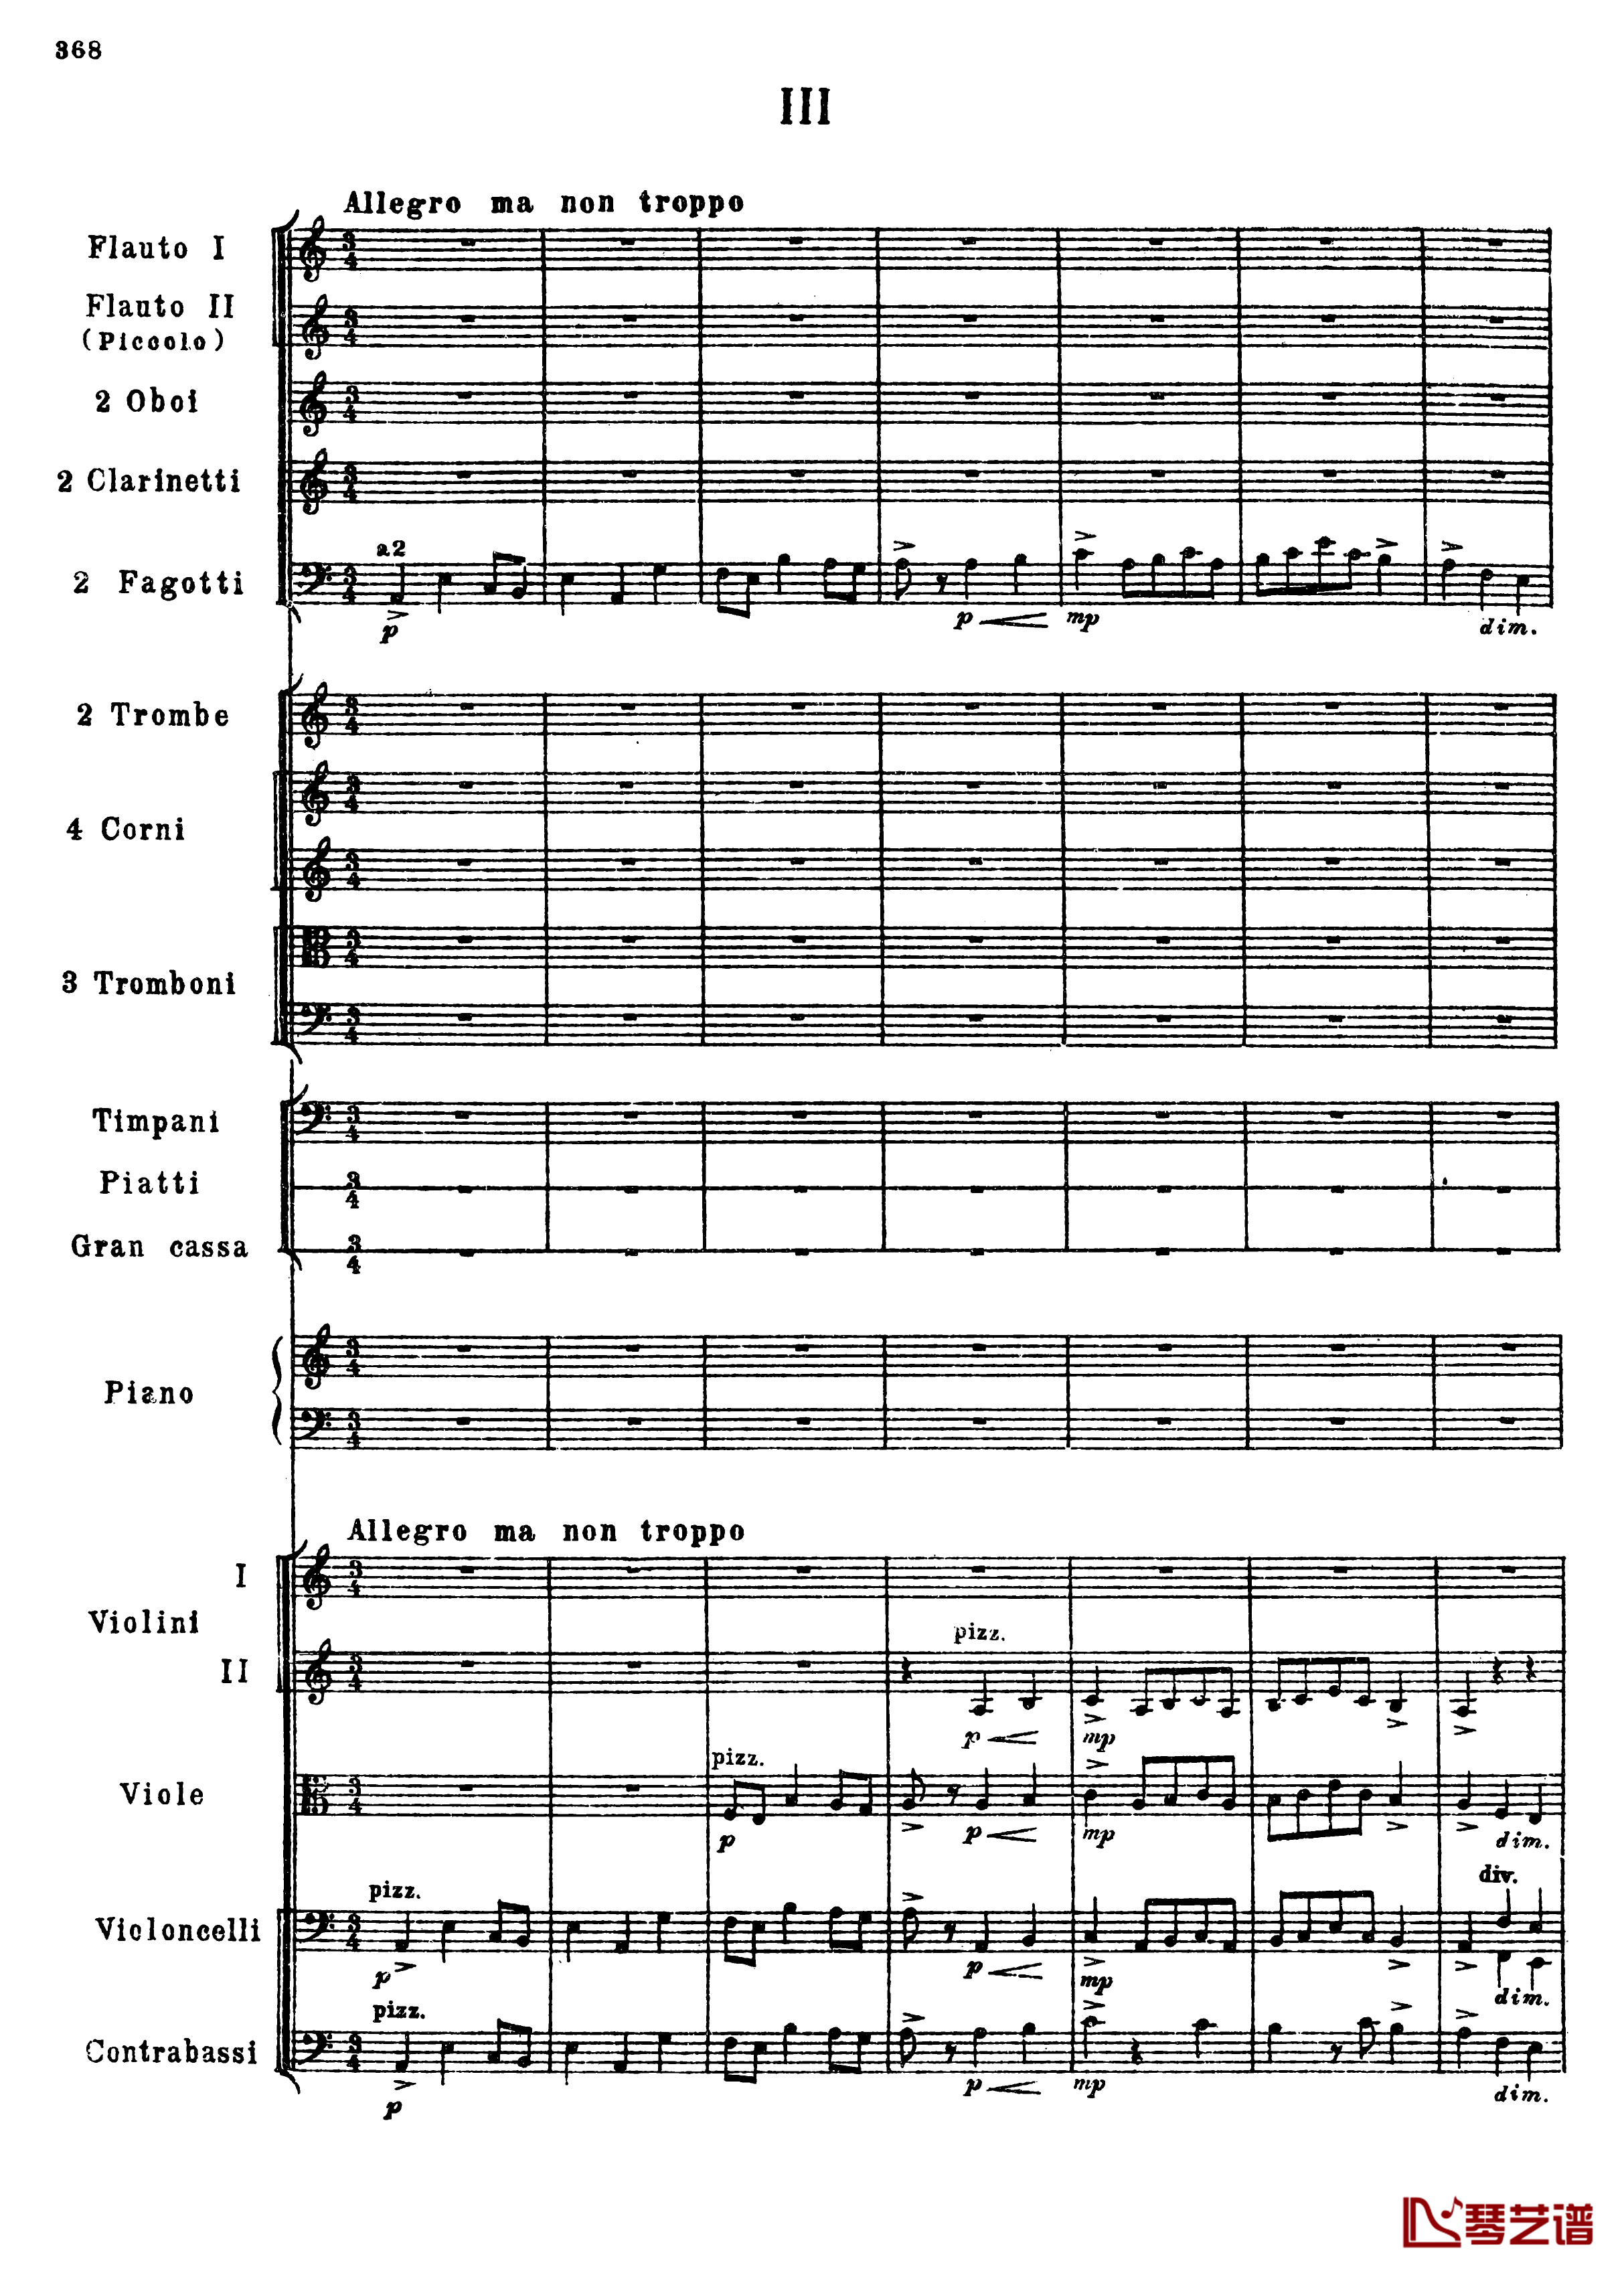 普罗科菲耶夫第三钢琴协奏曲钢琴谱-总谱-普罗科非耶夫100